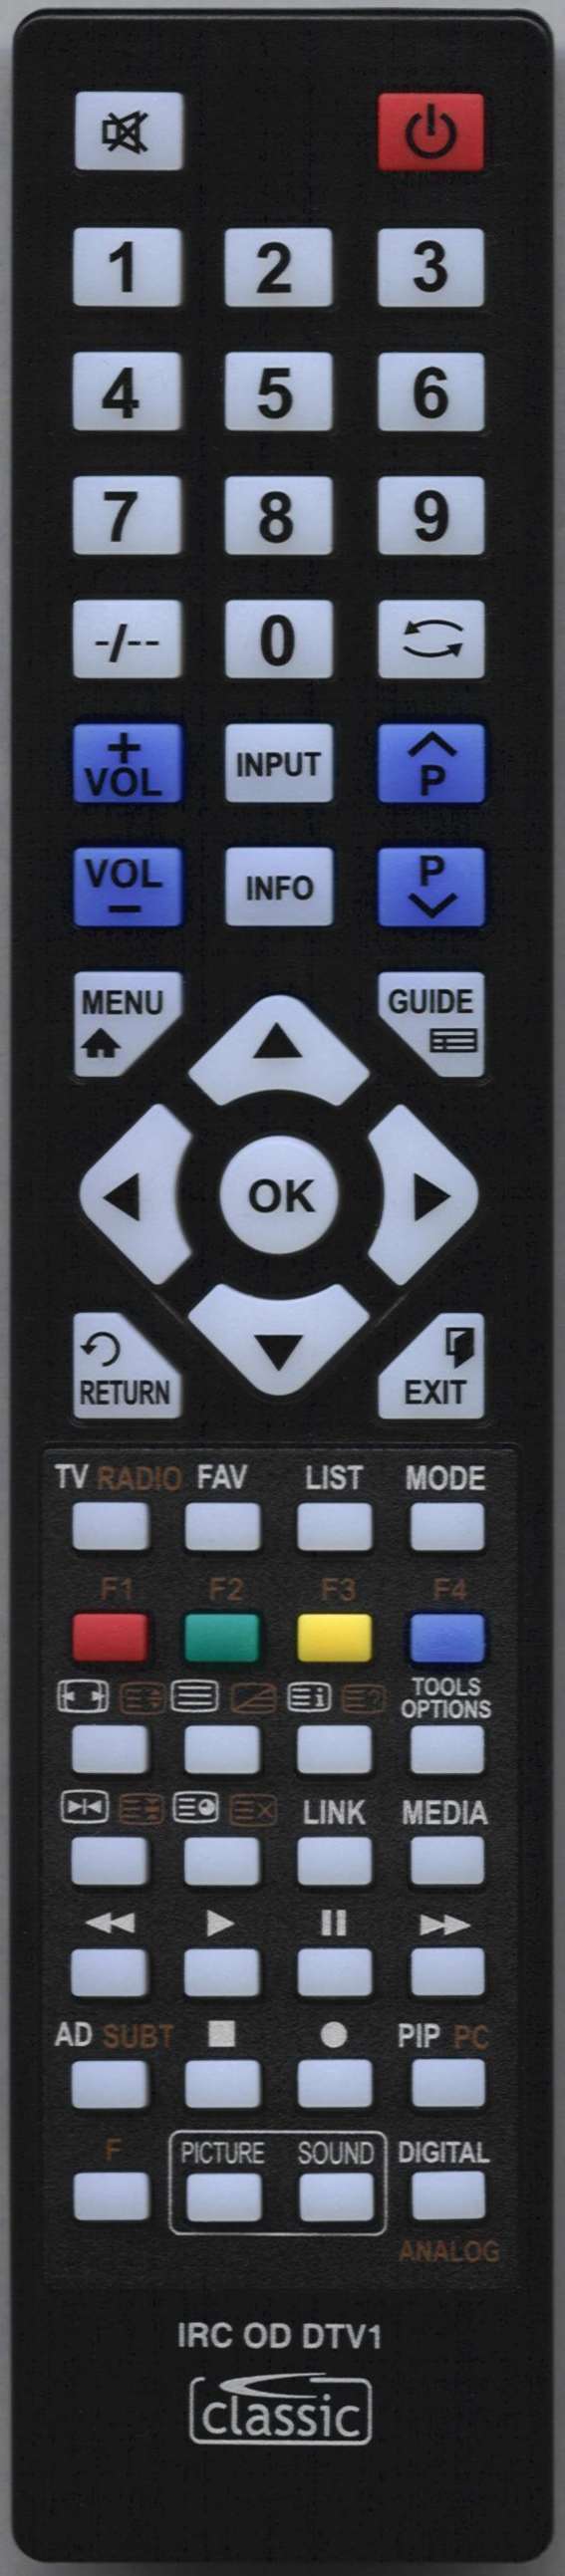 LUXOR 10114159 Remote Control Alternative